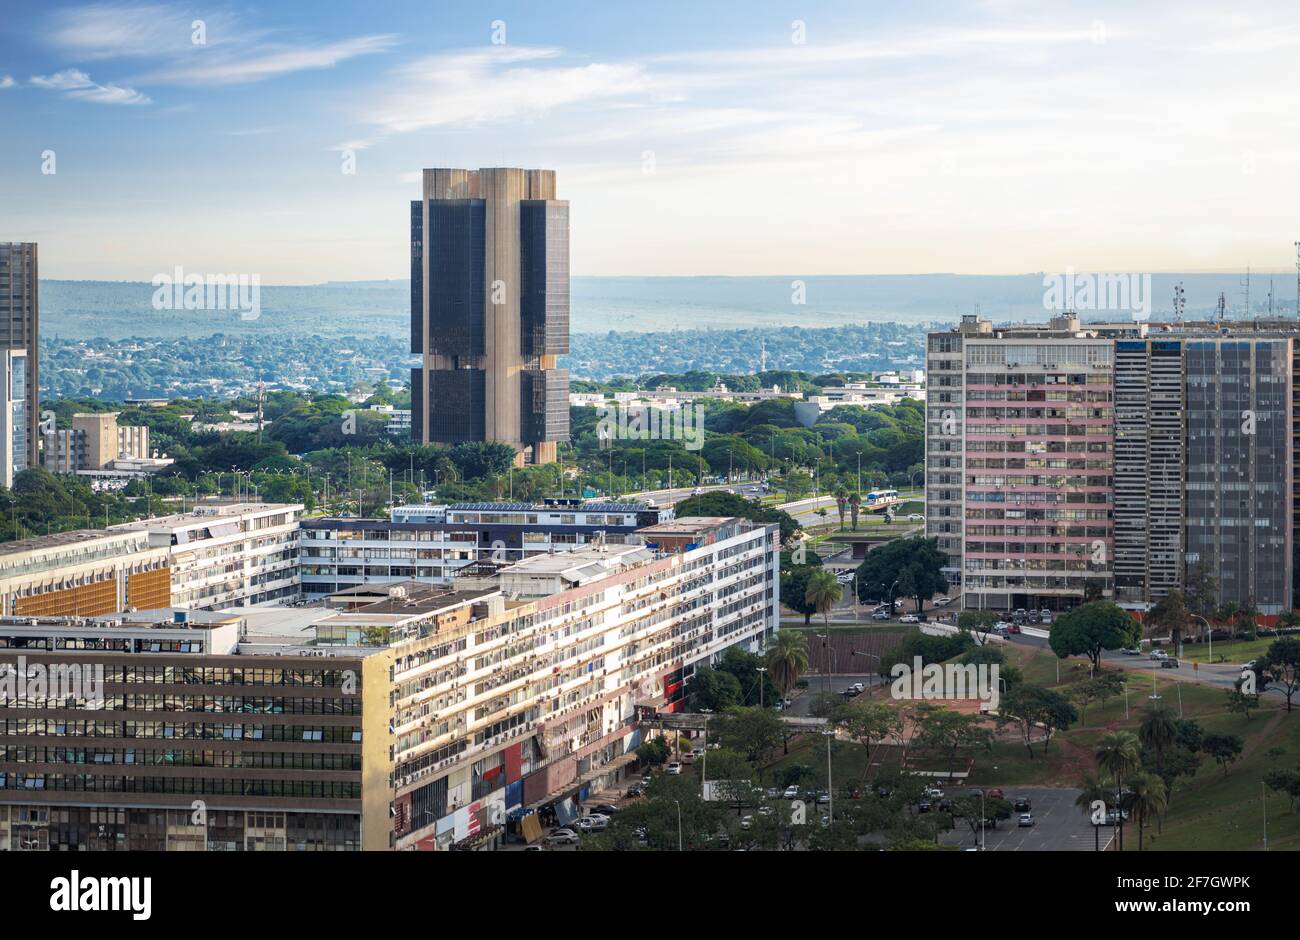 Vue aérienne du siège de Brasilia et de la Banque centrale du Brésil - Brasilia, District fédéral, Brésil Banque D'Images